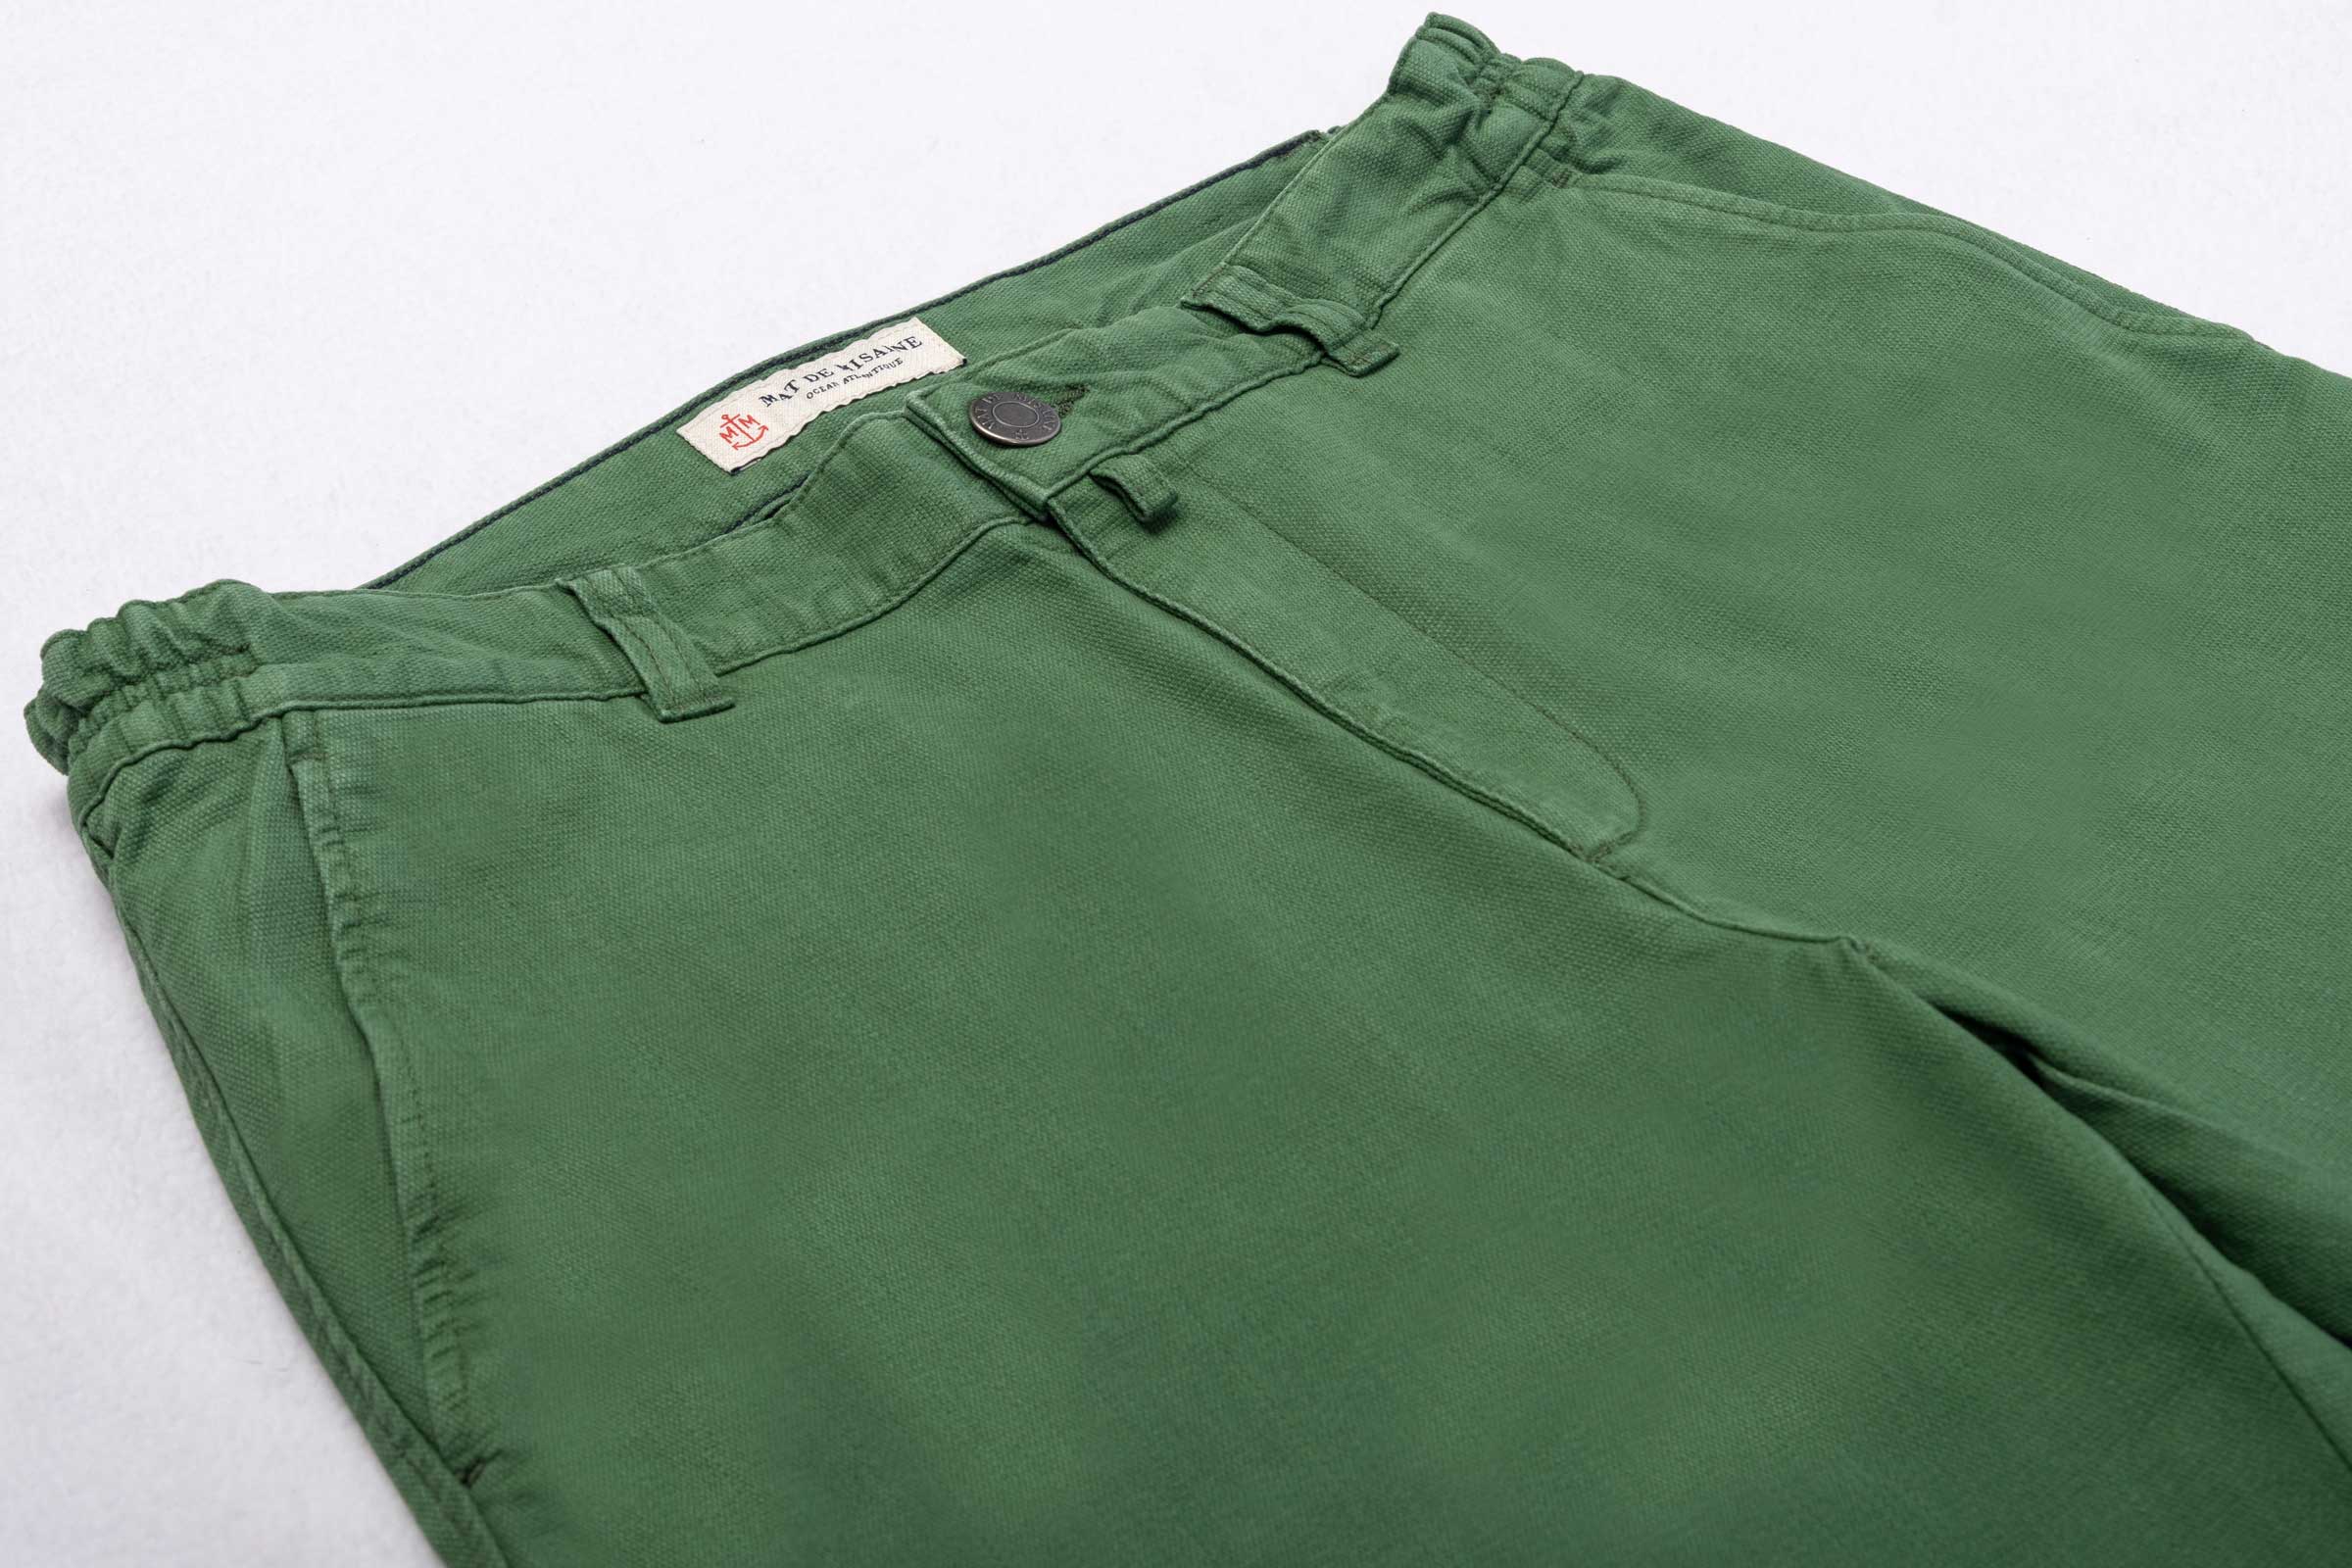 Pantalon chino taille élastiquée en coton